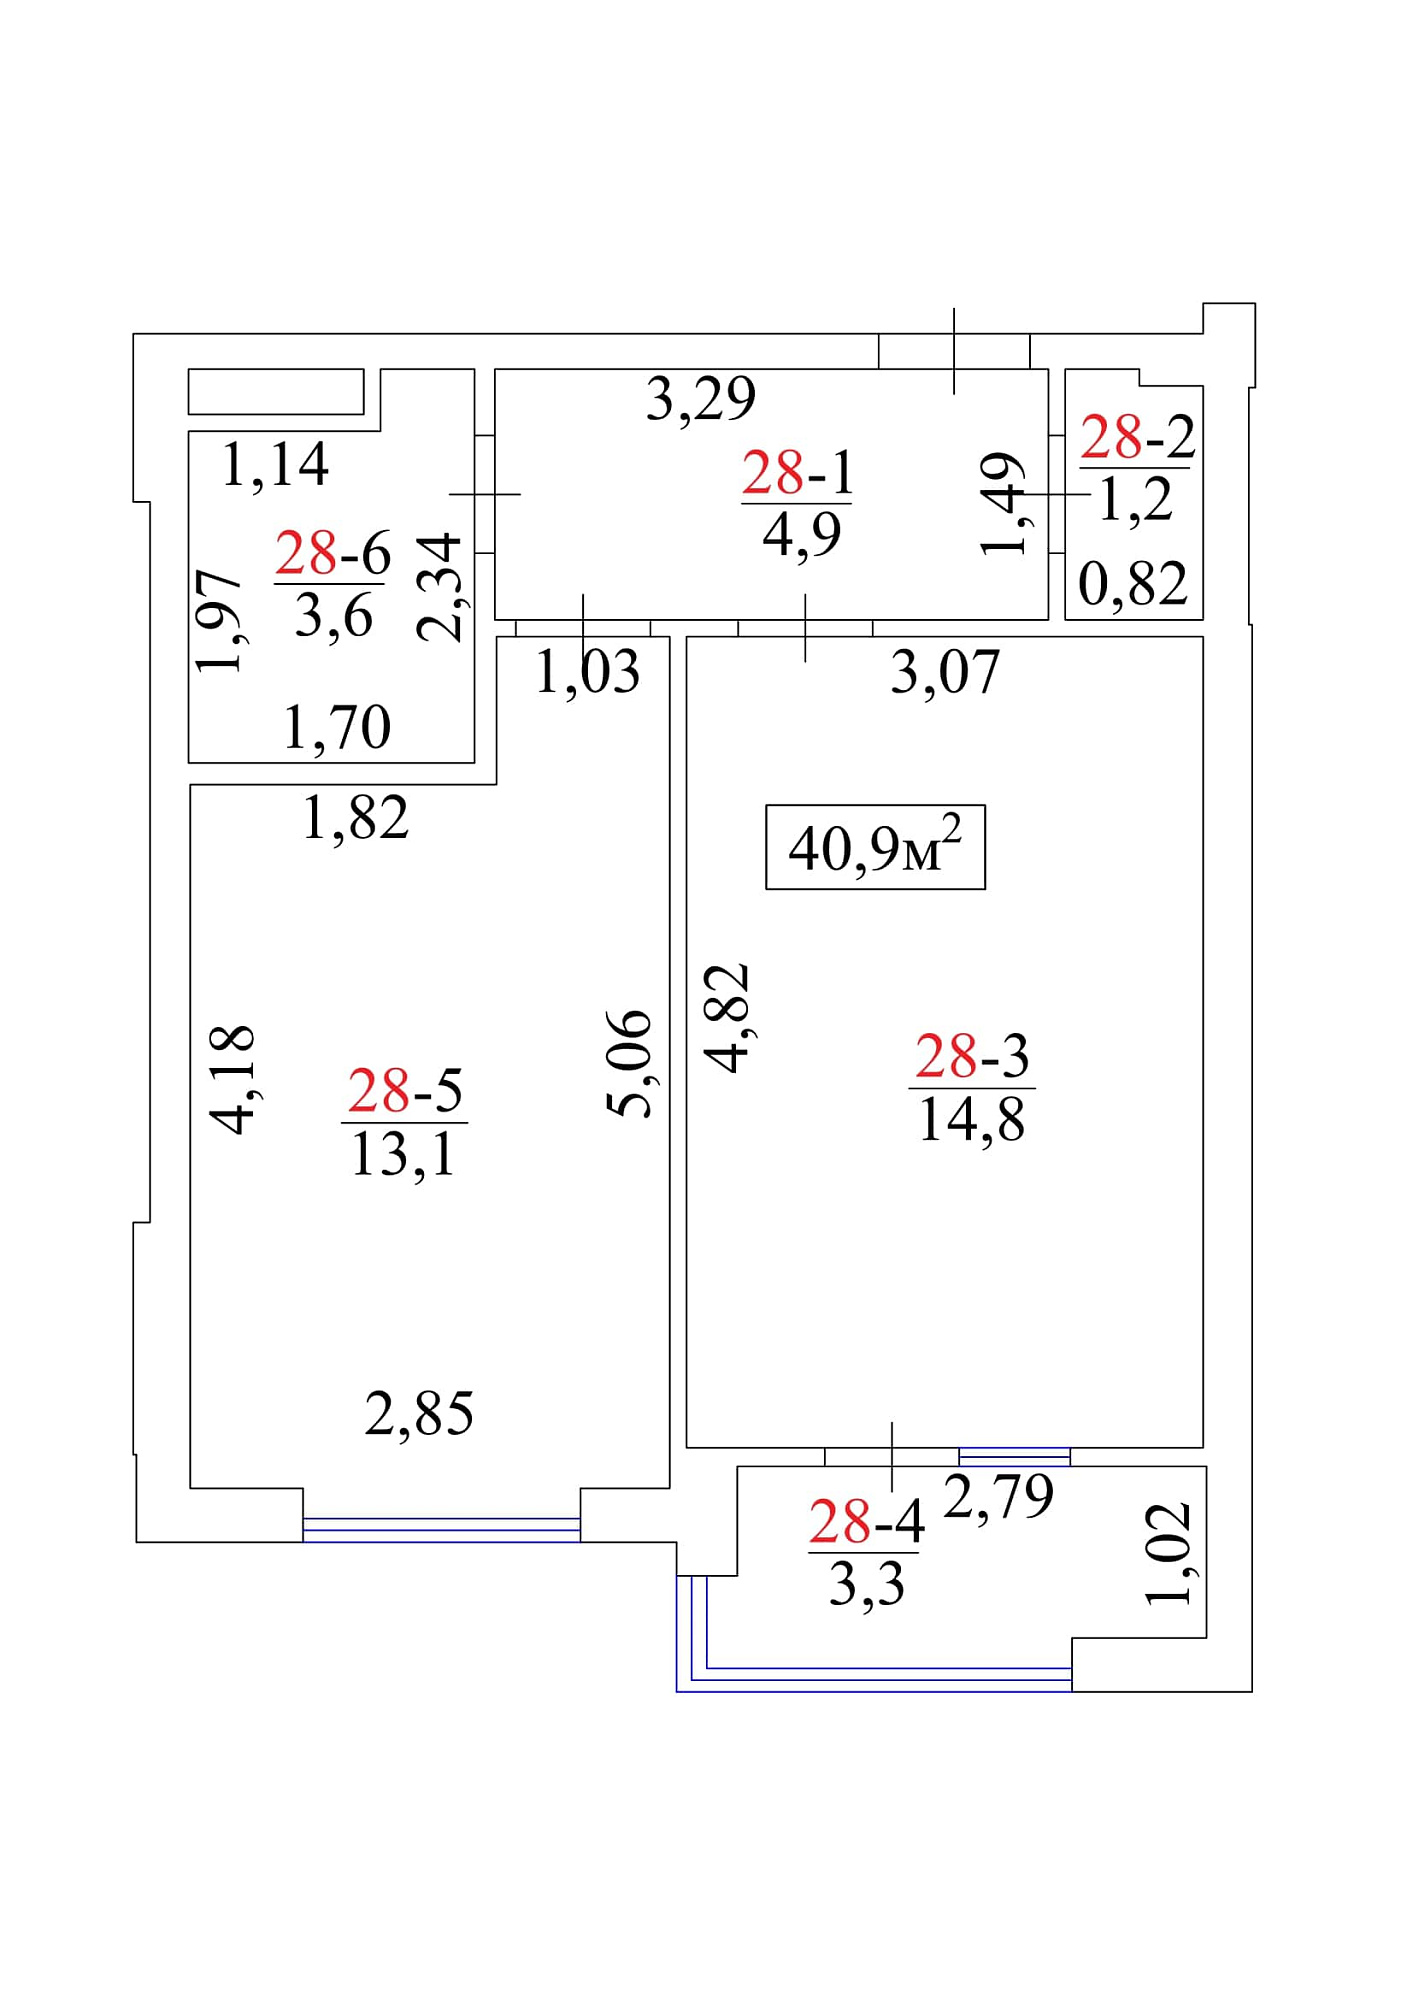 Планировка 1-к квартира площей 40.9м2, AB-01-04/00028.